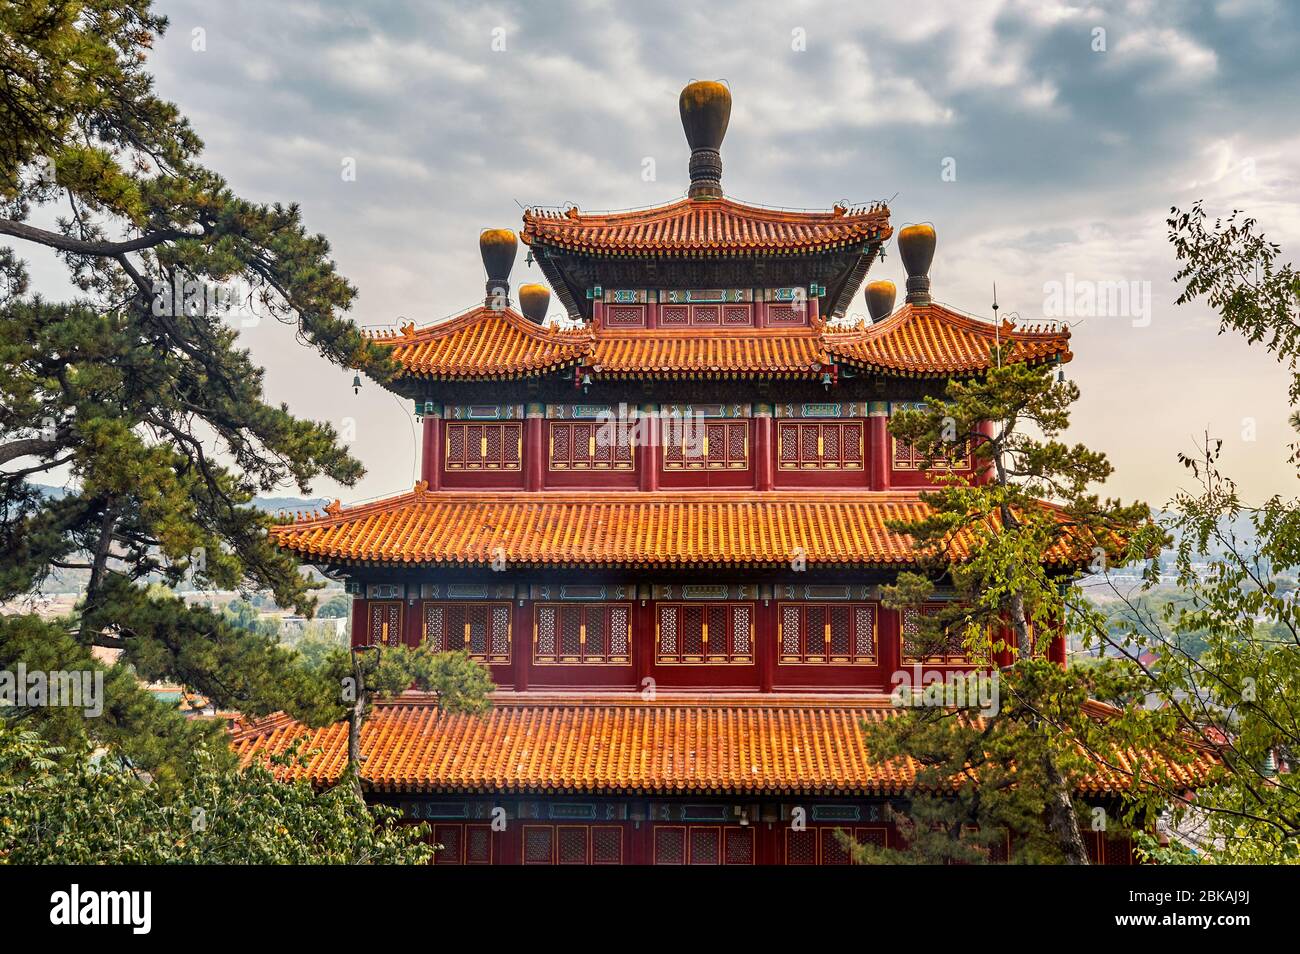 Tempio della Pace universale, Puning si, uno degli otto templi esterni di Chengde nel resort montano di Chengde, residenza estiva degli imperatori della dinastia Qing Foto Stock